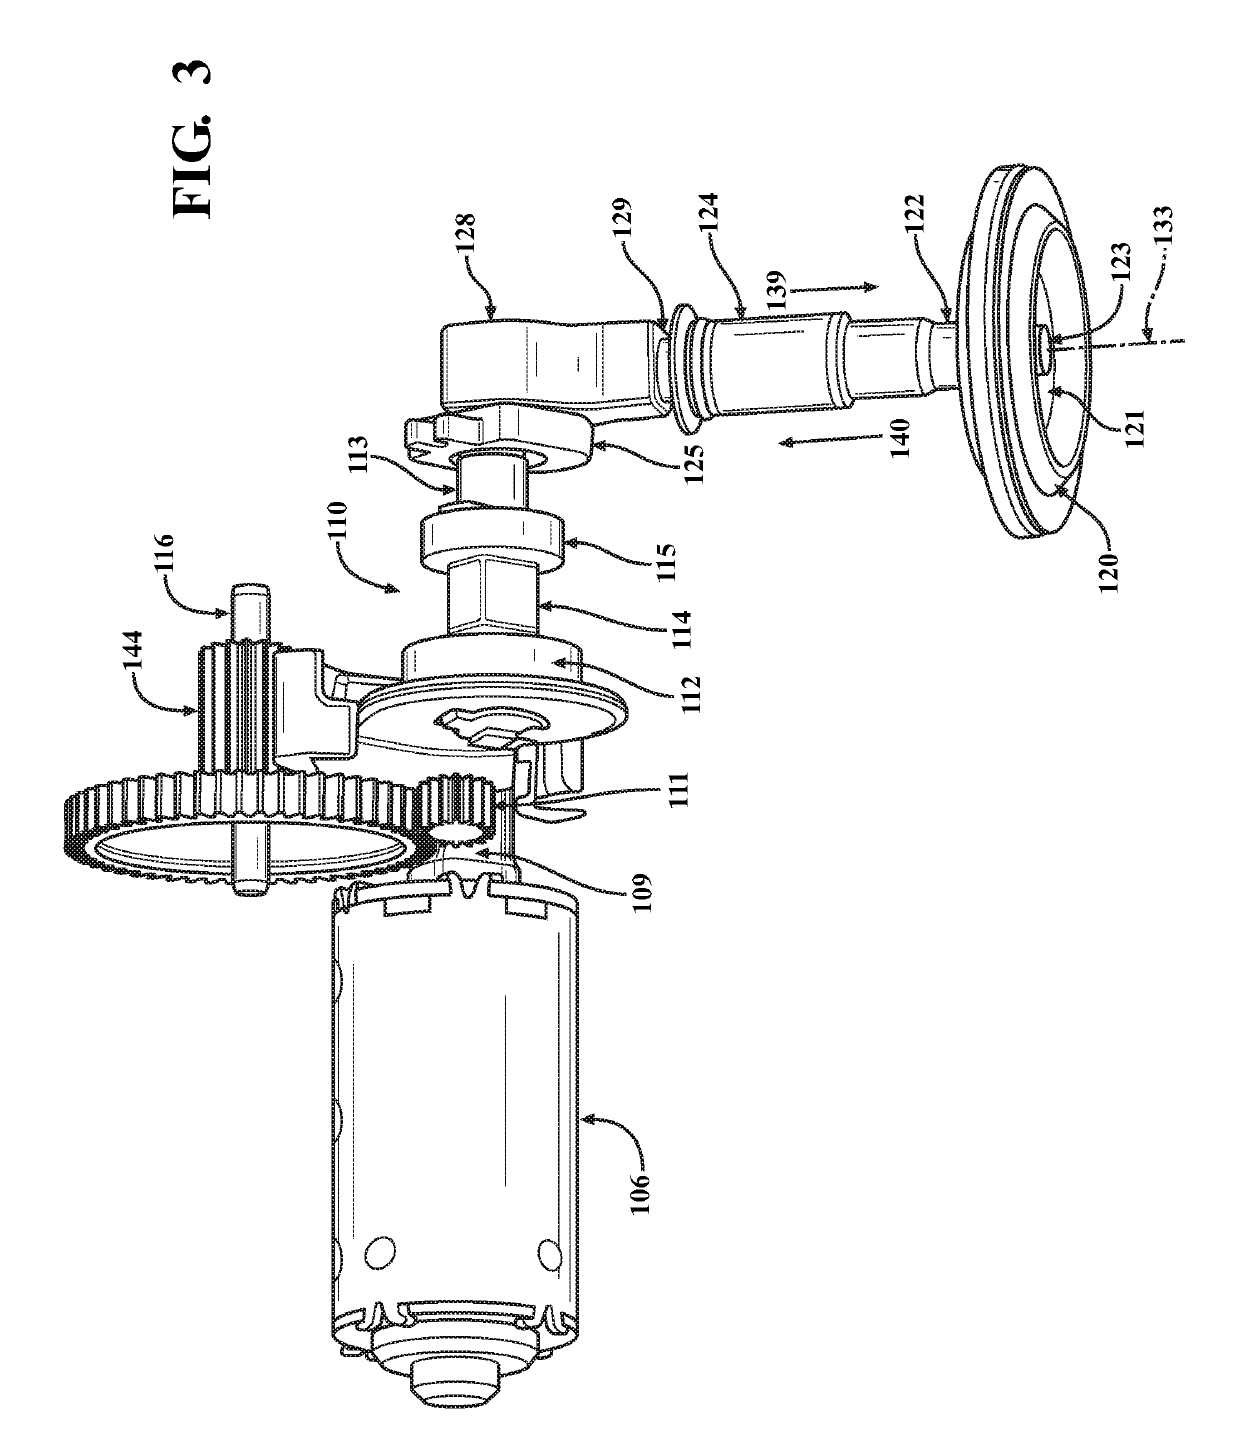 Split linkage mechanism for valve assembly